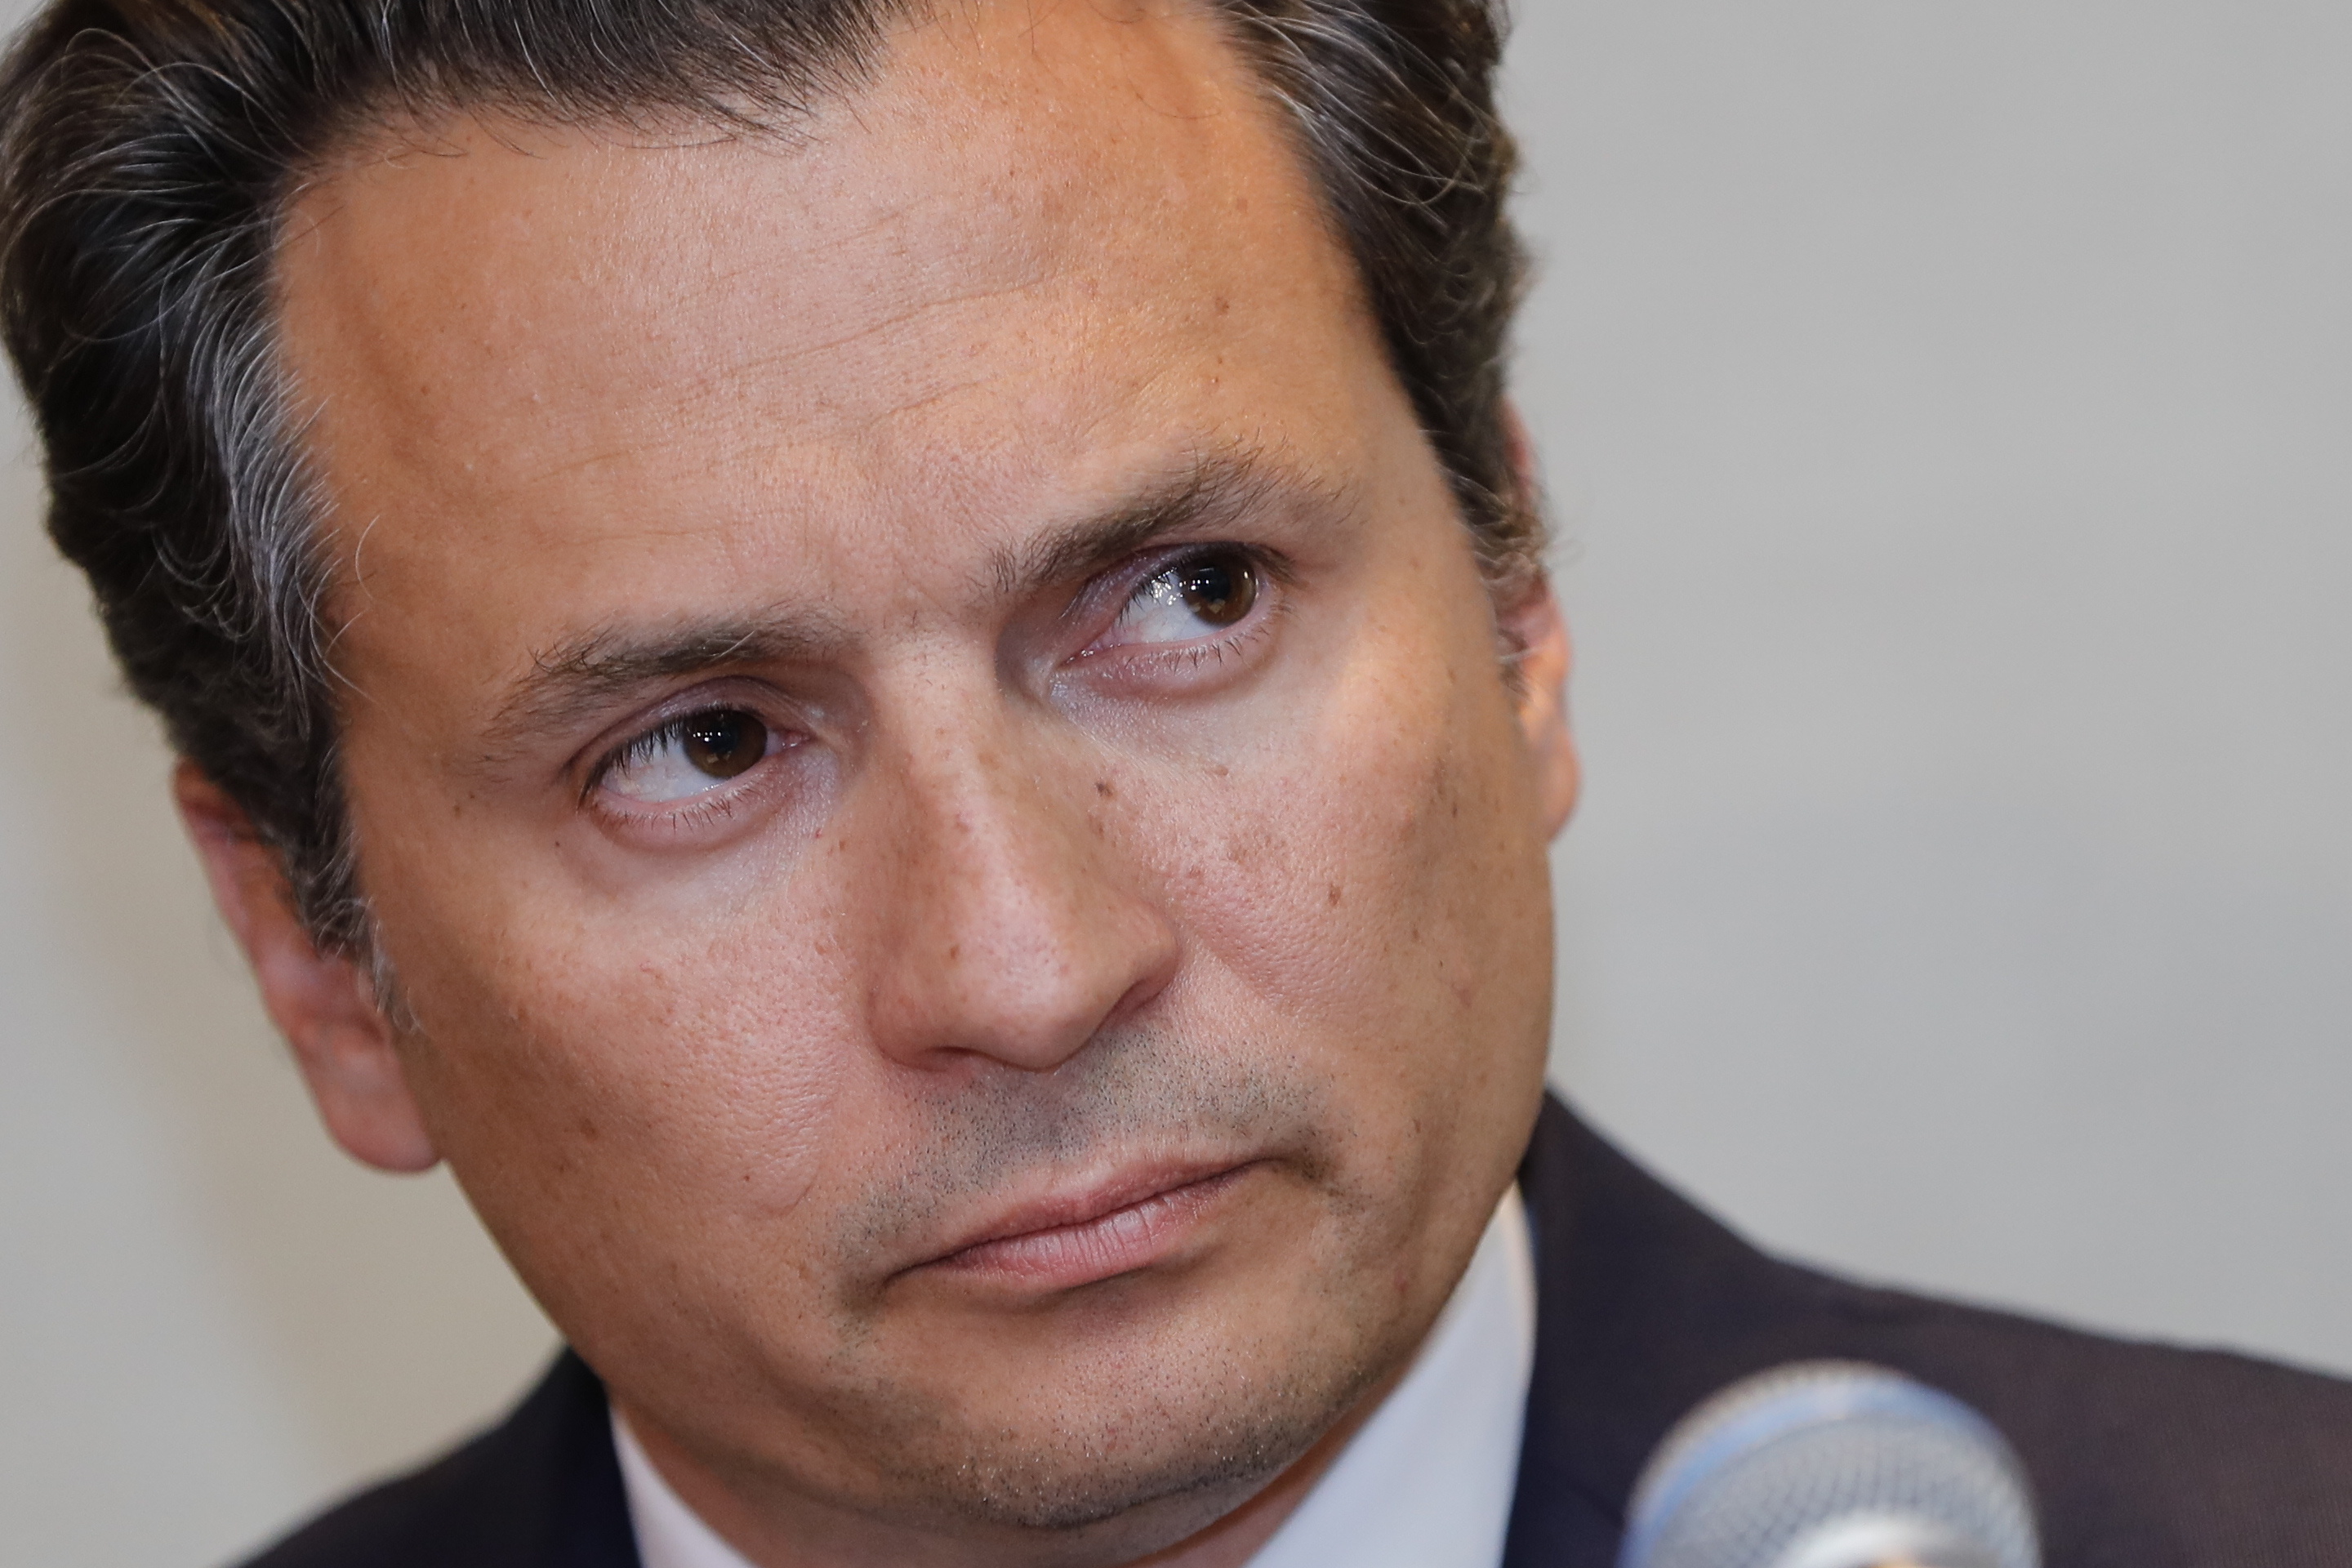 El exdirector de Petróleos Mexicanos (Pemex), Emilio Lozoya, ha sido señalado como posible participe de diversos actos de corrupción. (Foto: EFE/José Méndez)
